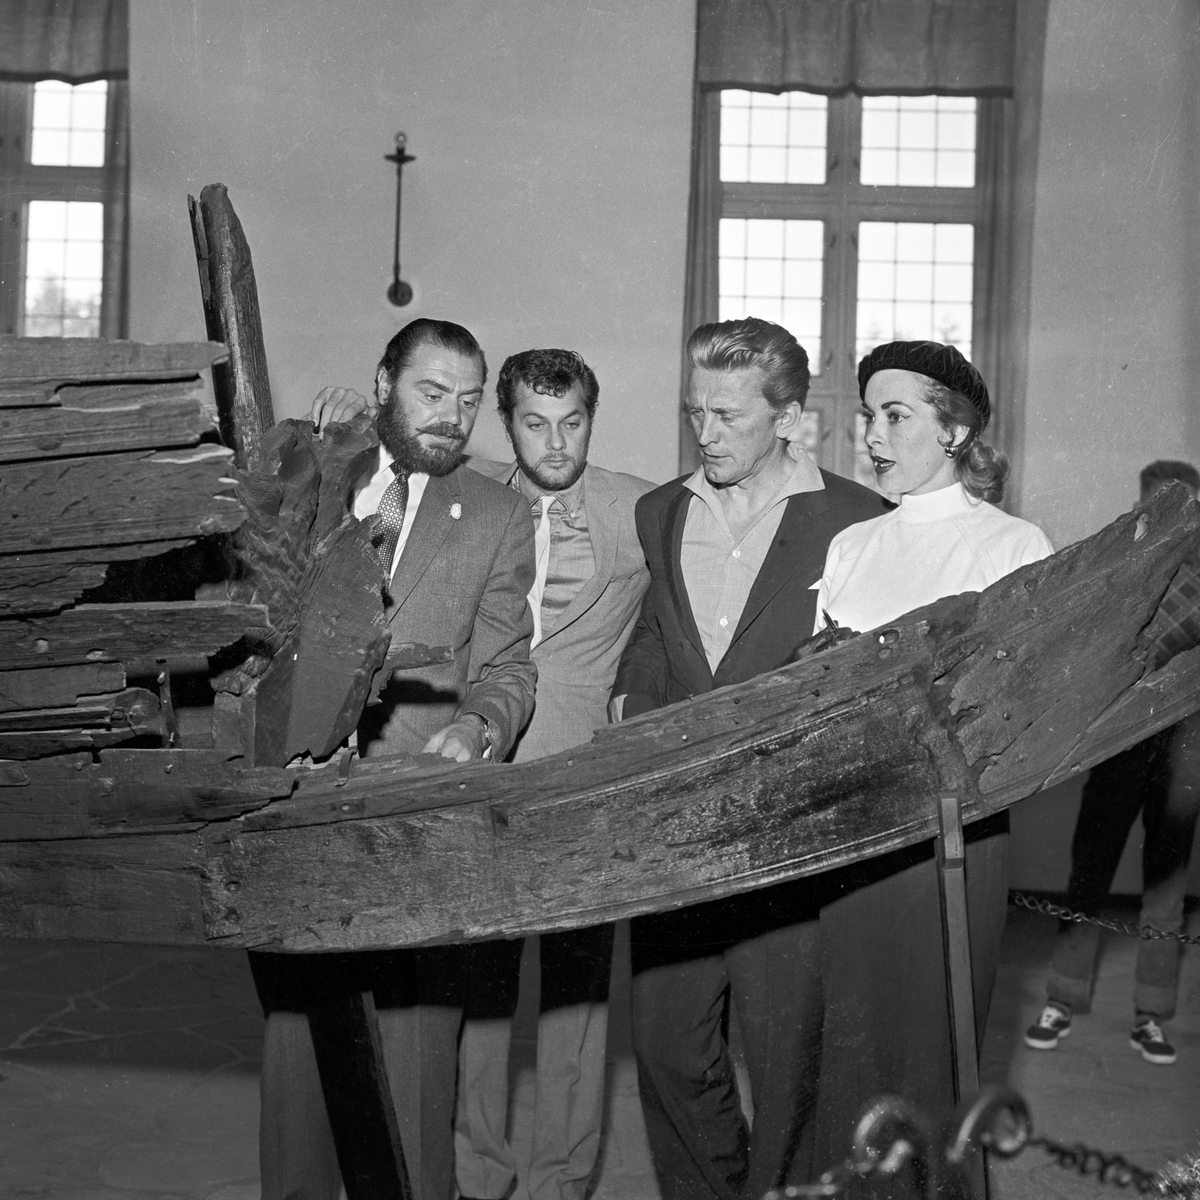 Serie. Skuespillere fra filmen "The Vikings" på museumsbesøk. Fra venstre Ernest Borgnine, Tony Curtis, Kirk Douglas og Janet Leigh. Fotografert mai 1957.

